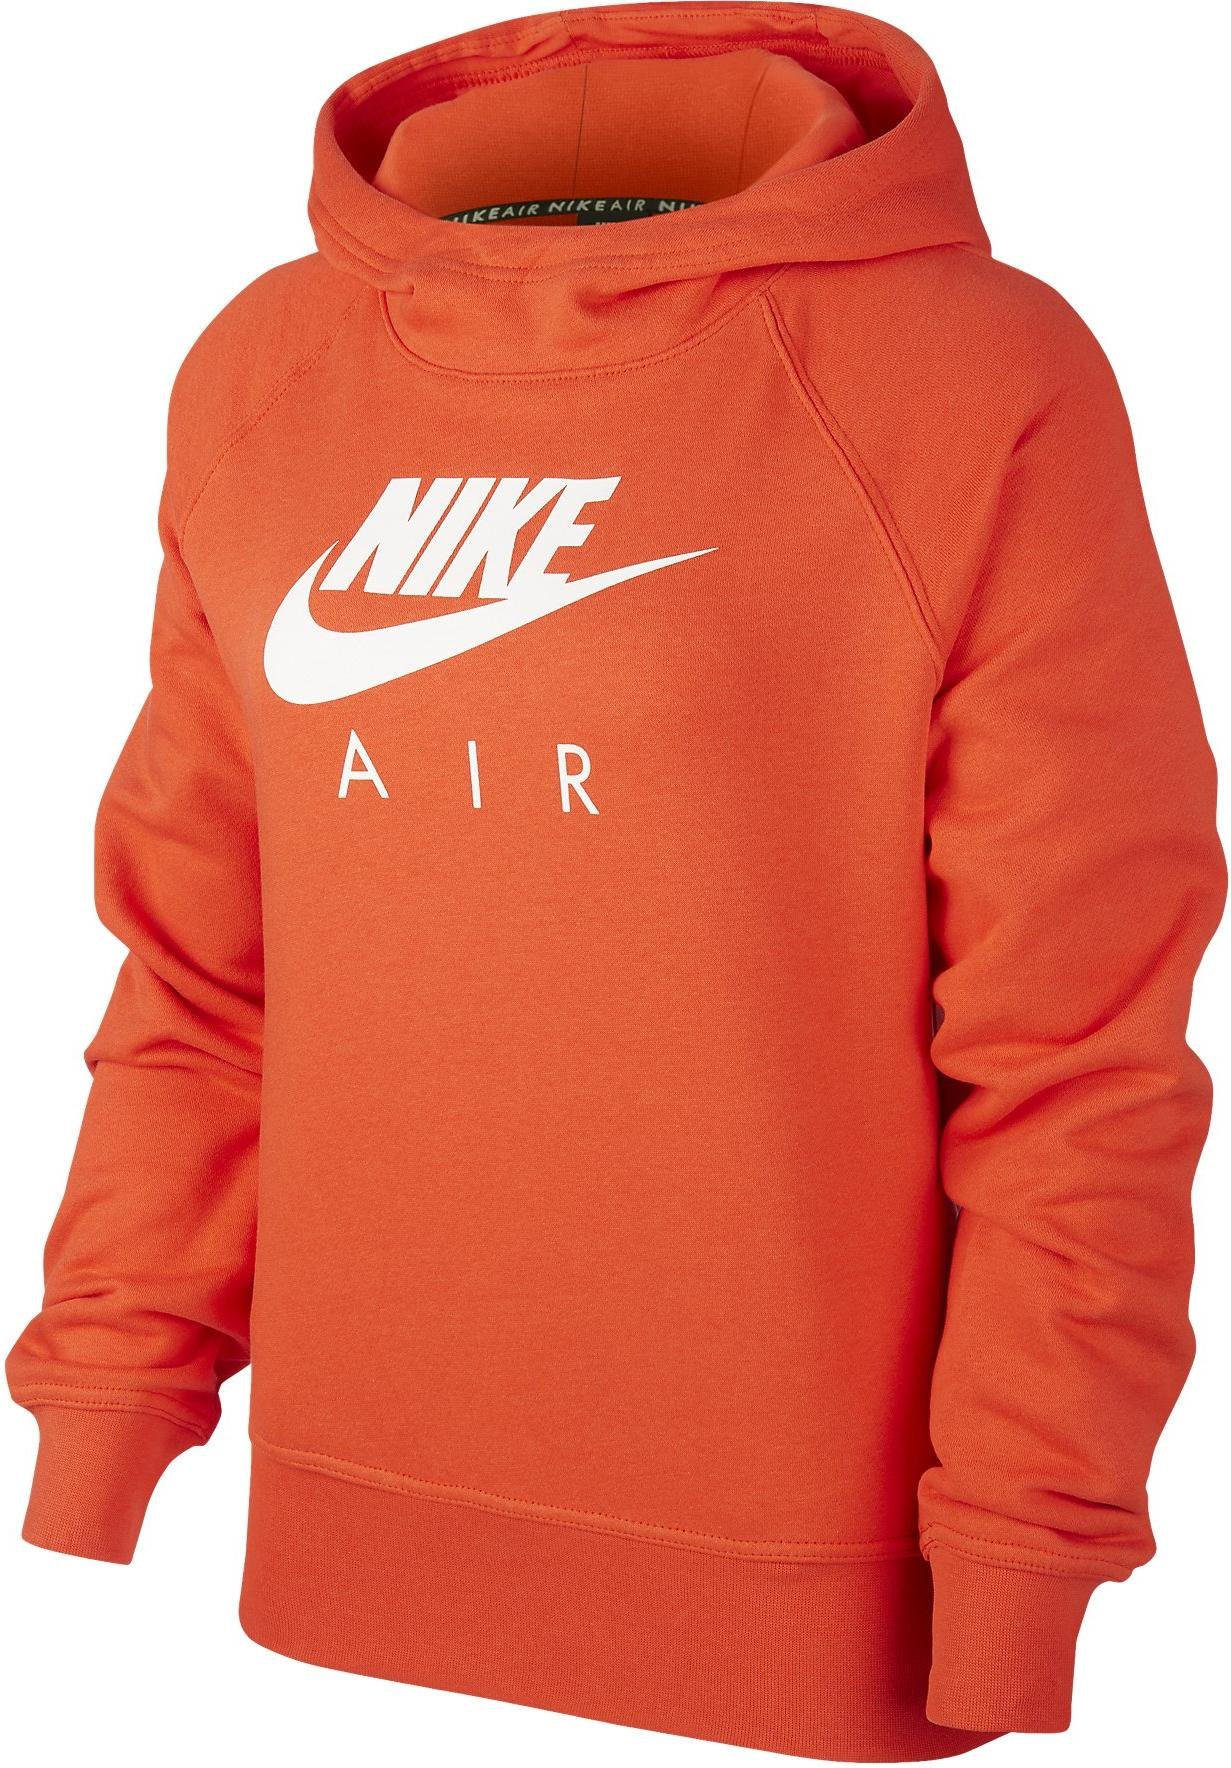 nike air orange hoodie